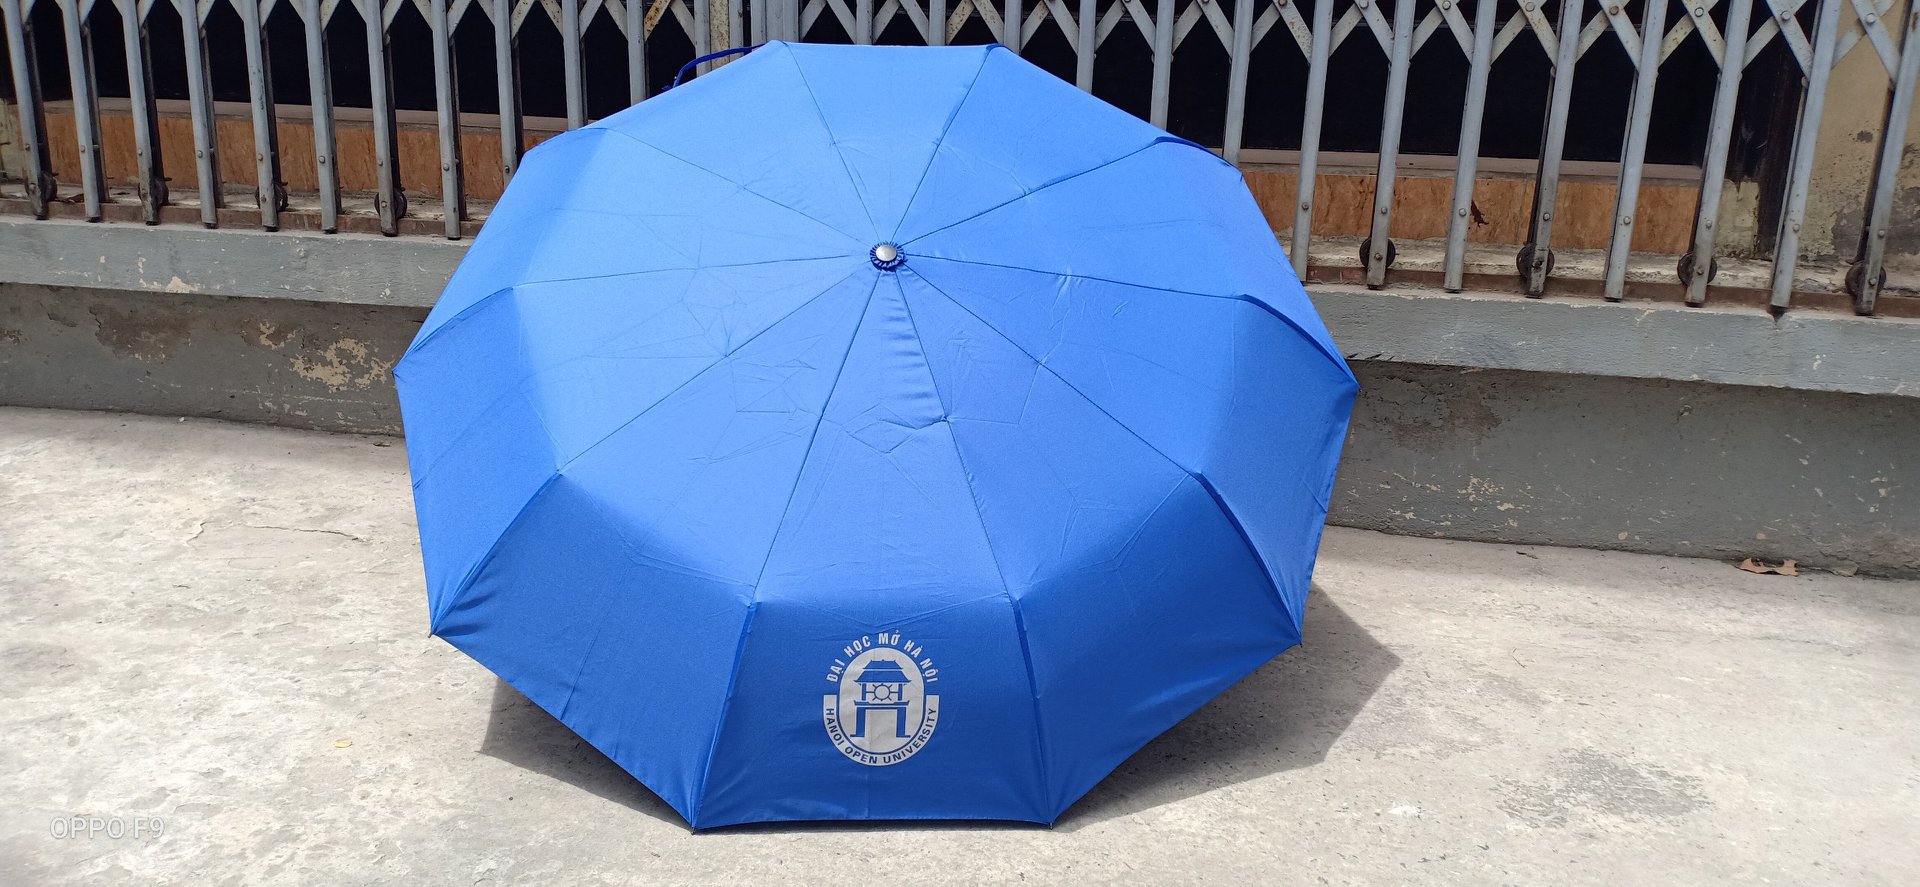 Lựa chọn ô dù cầm tay in logo phù hợp